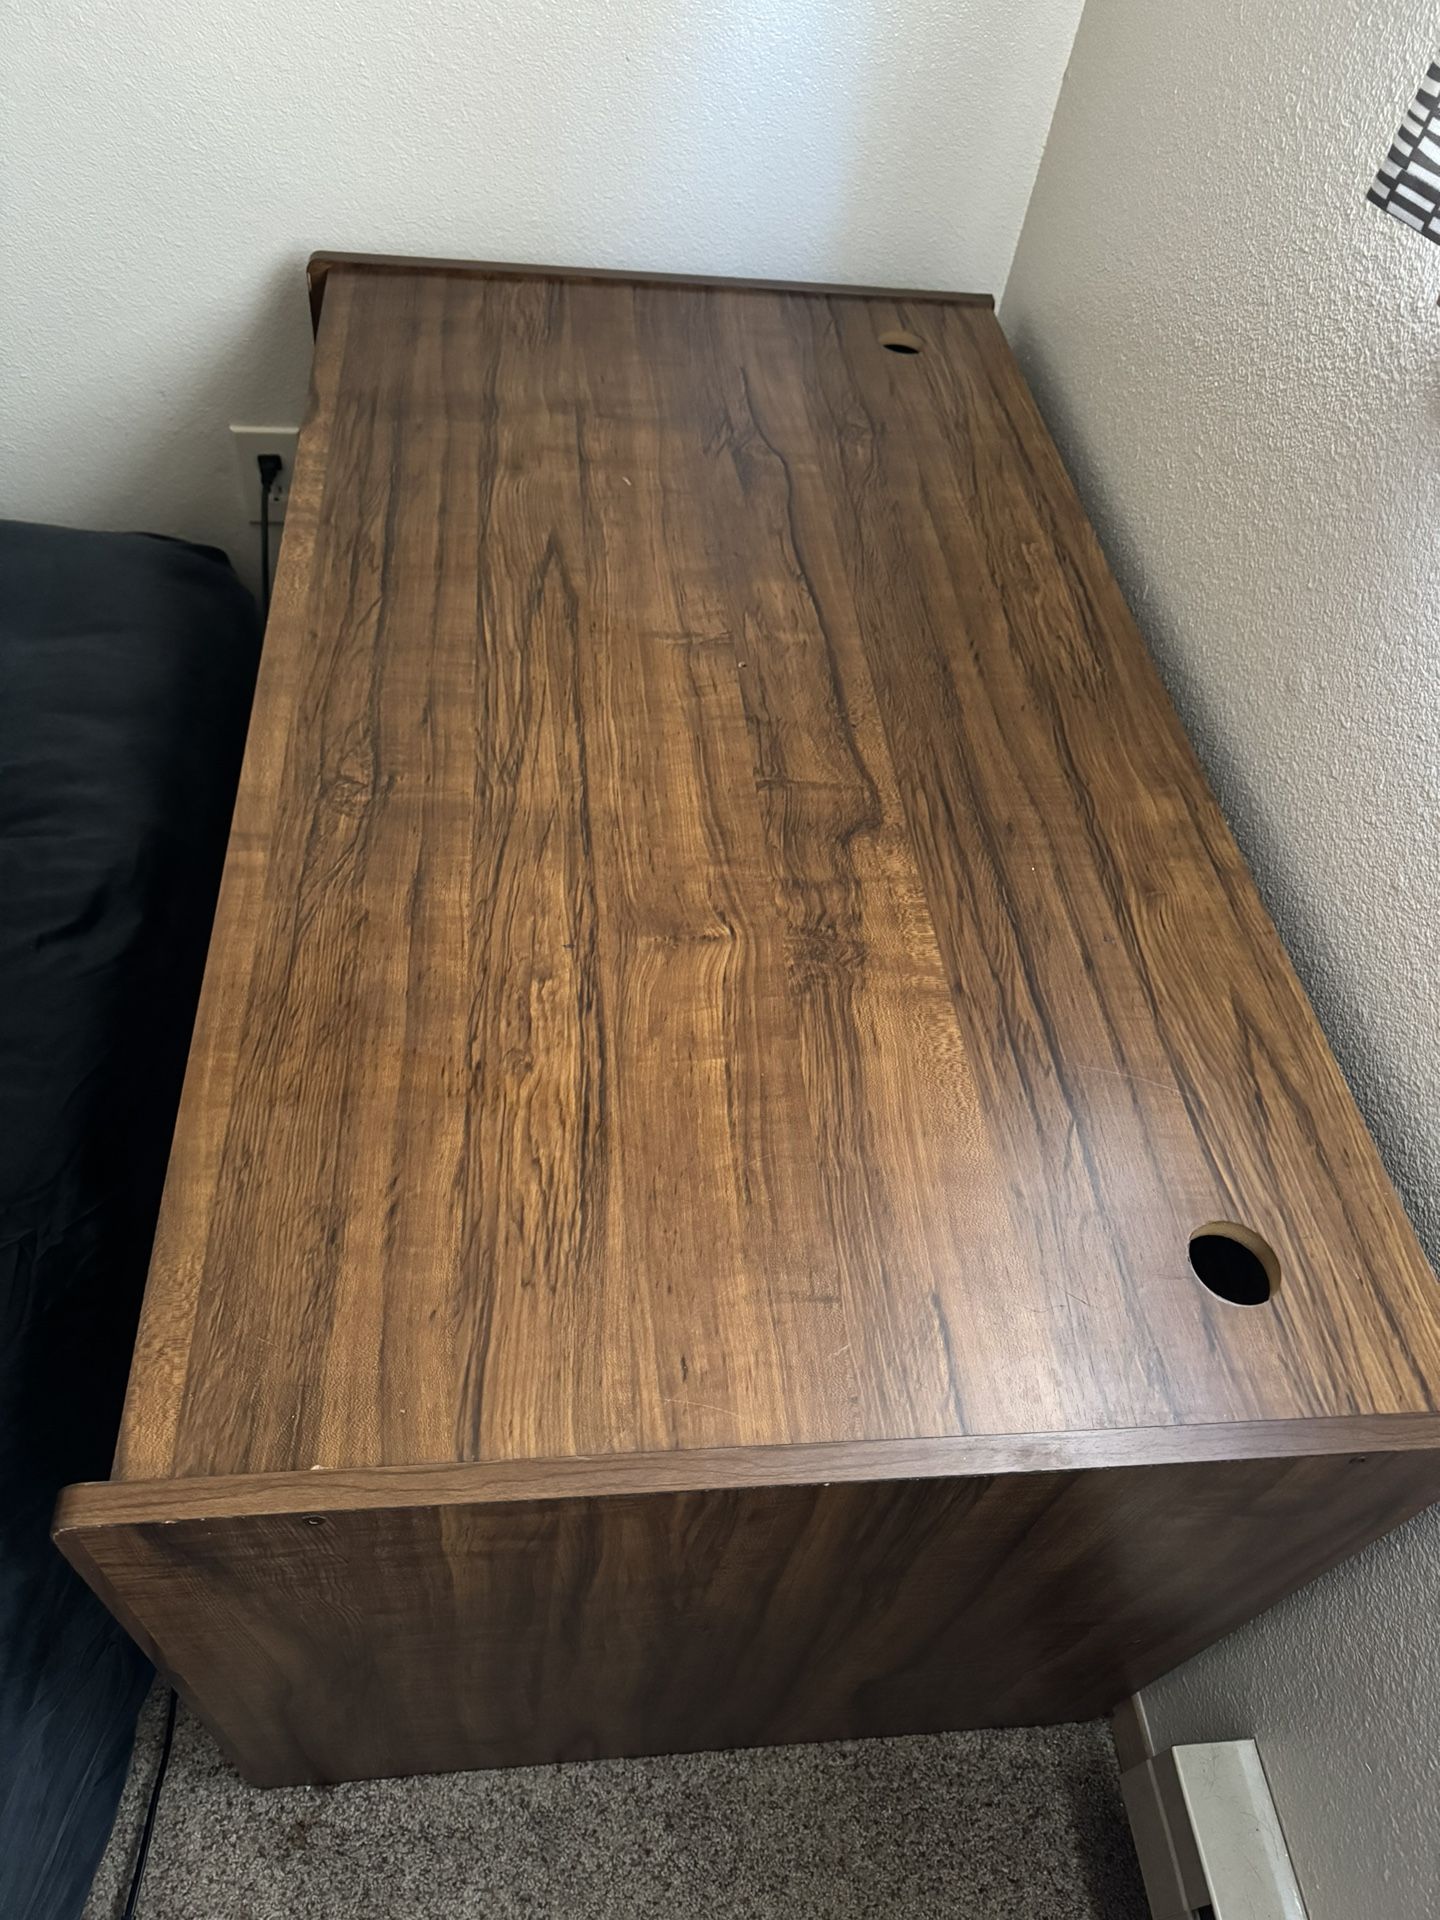 Free Sturdy Wooden Desk